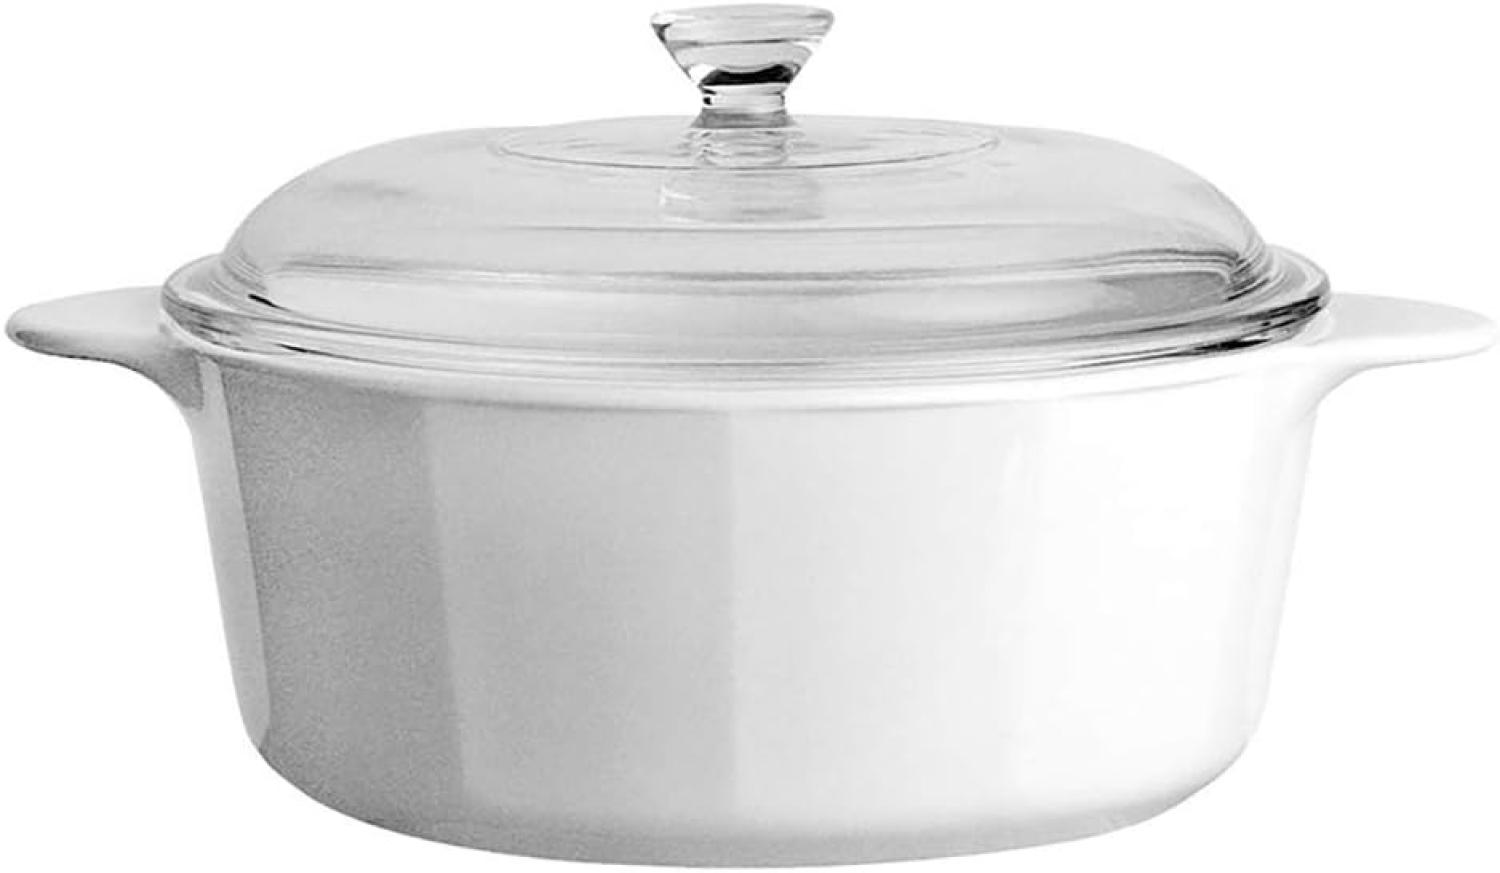 Corningware Kochtopf aus Glaskeramik weiß - 2,25 Liter Bild 1